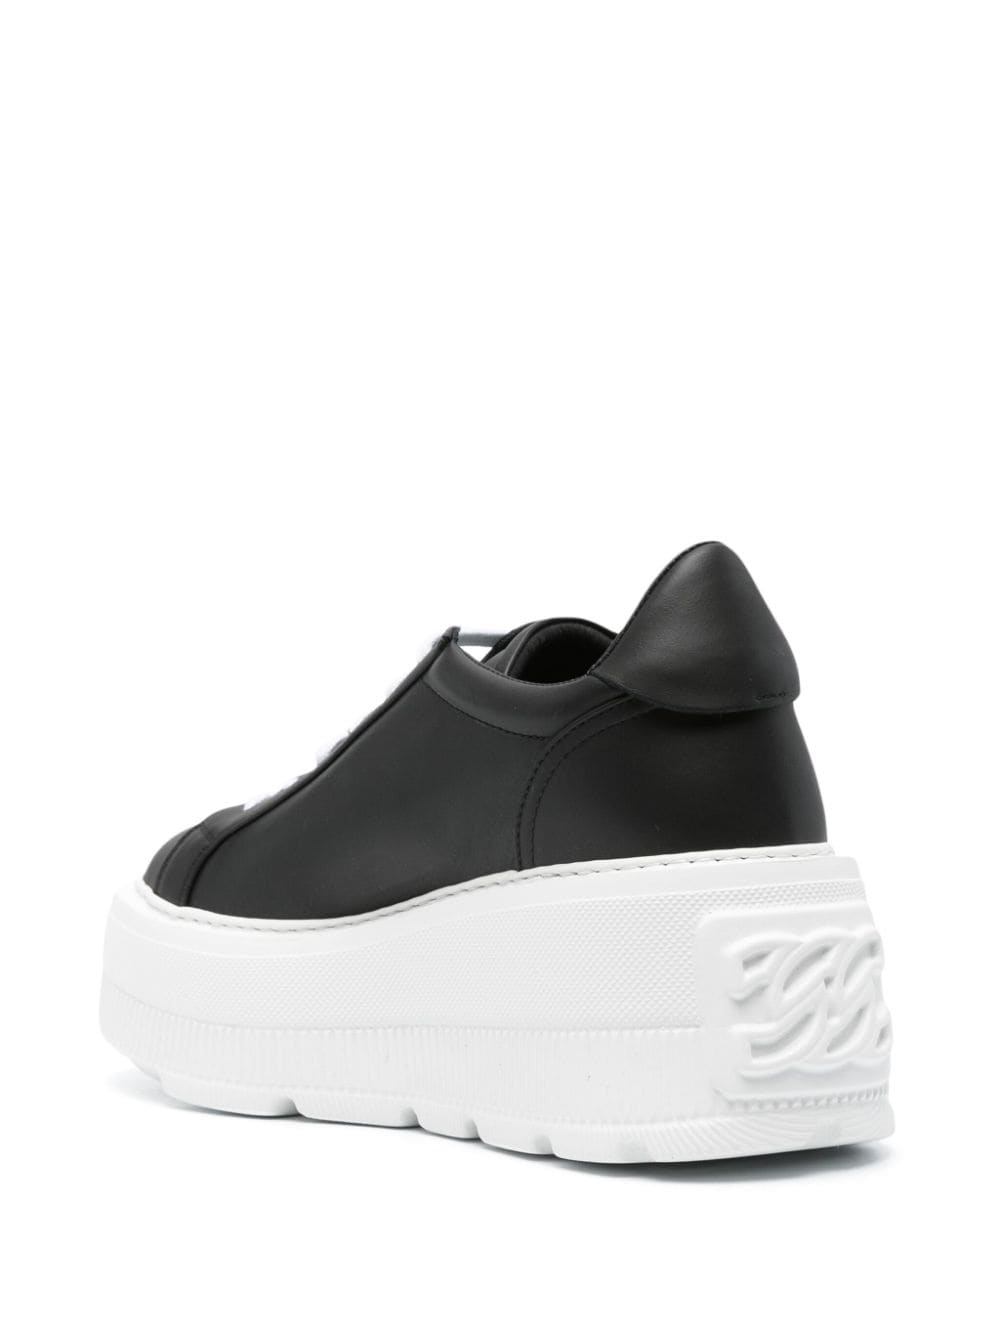 Shop Casadei Nexus Leather Wedge Sneakers In Black